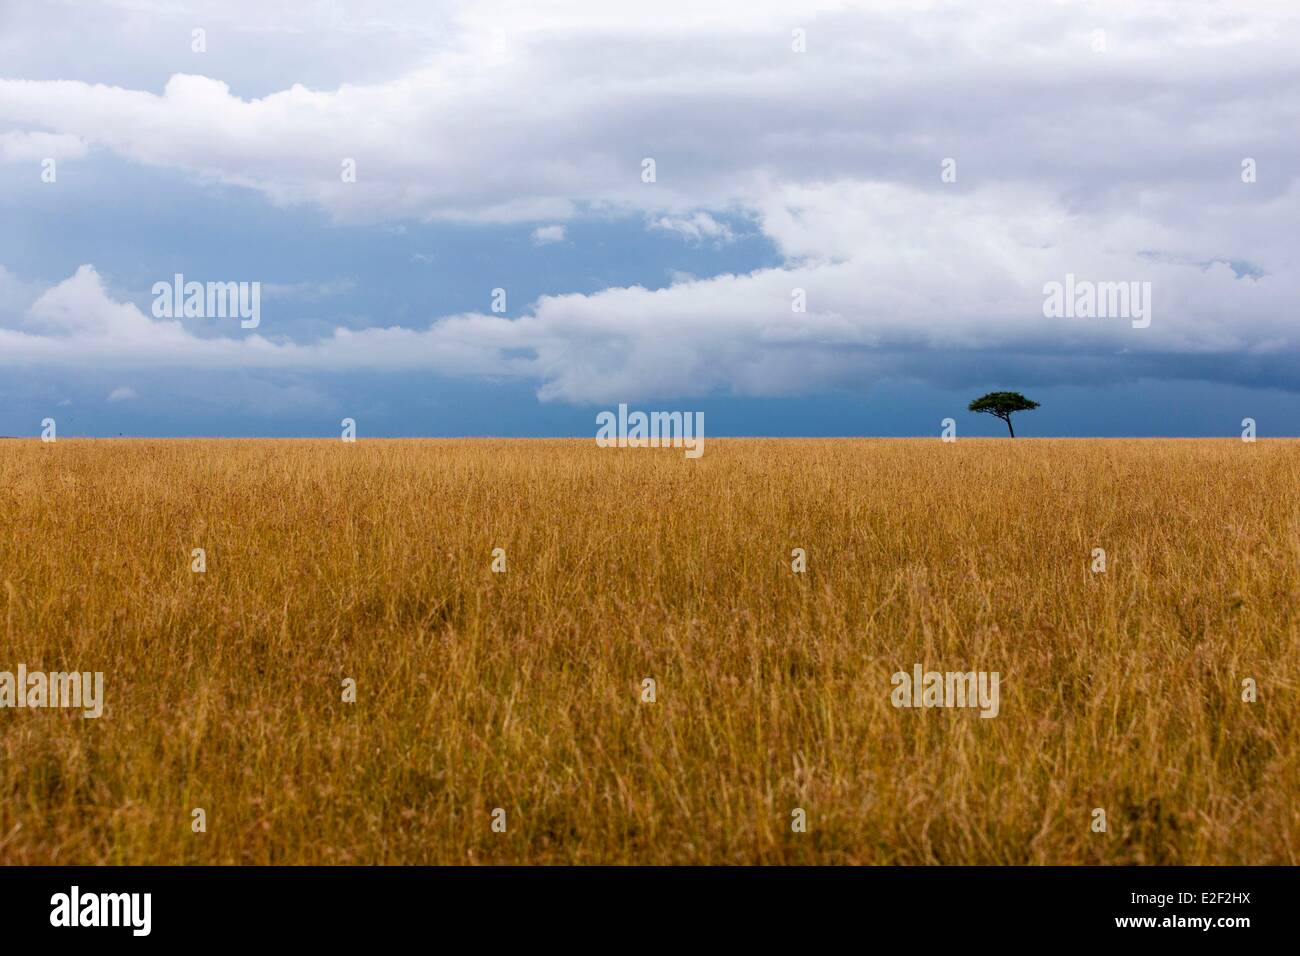 Au Kenya, la réserve Masai-Mara, saison sèche Banque D'Images